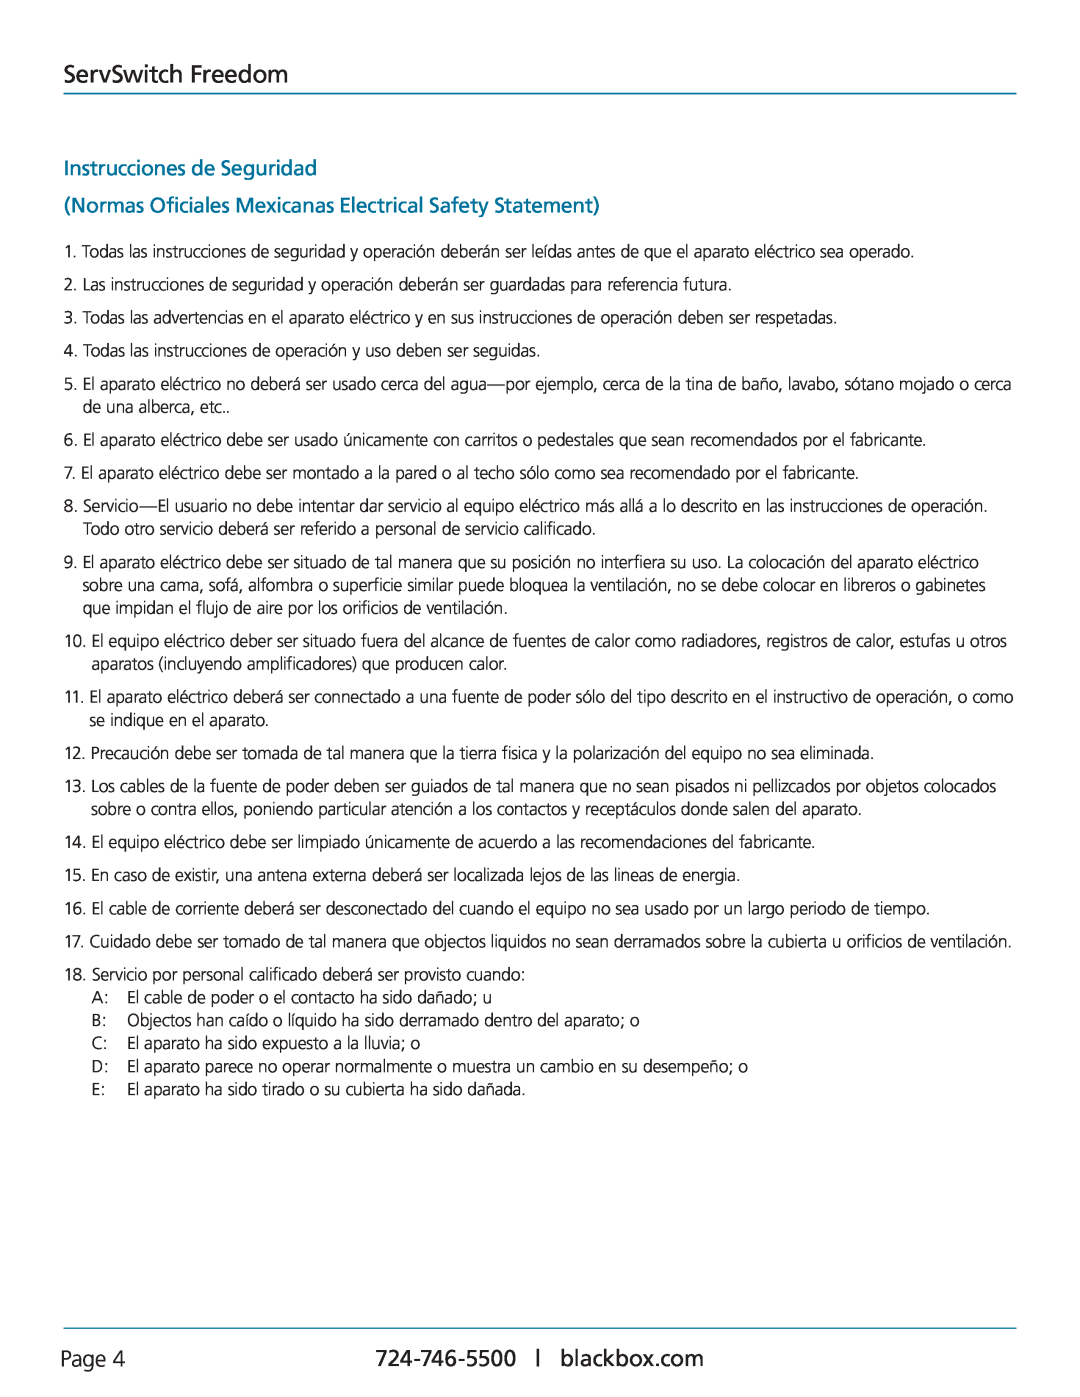 Black Box KV0004A Instrucciones de Seguridad, Normas Oficiales Mexicanas Electrical Safety Statement, ServSwitch Freedom 